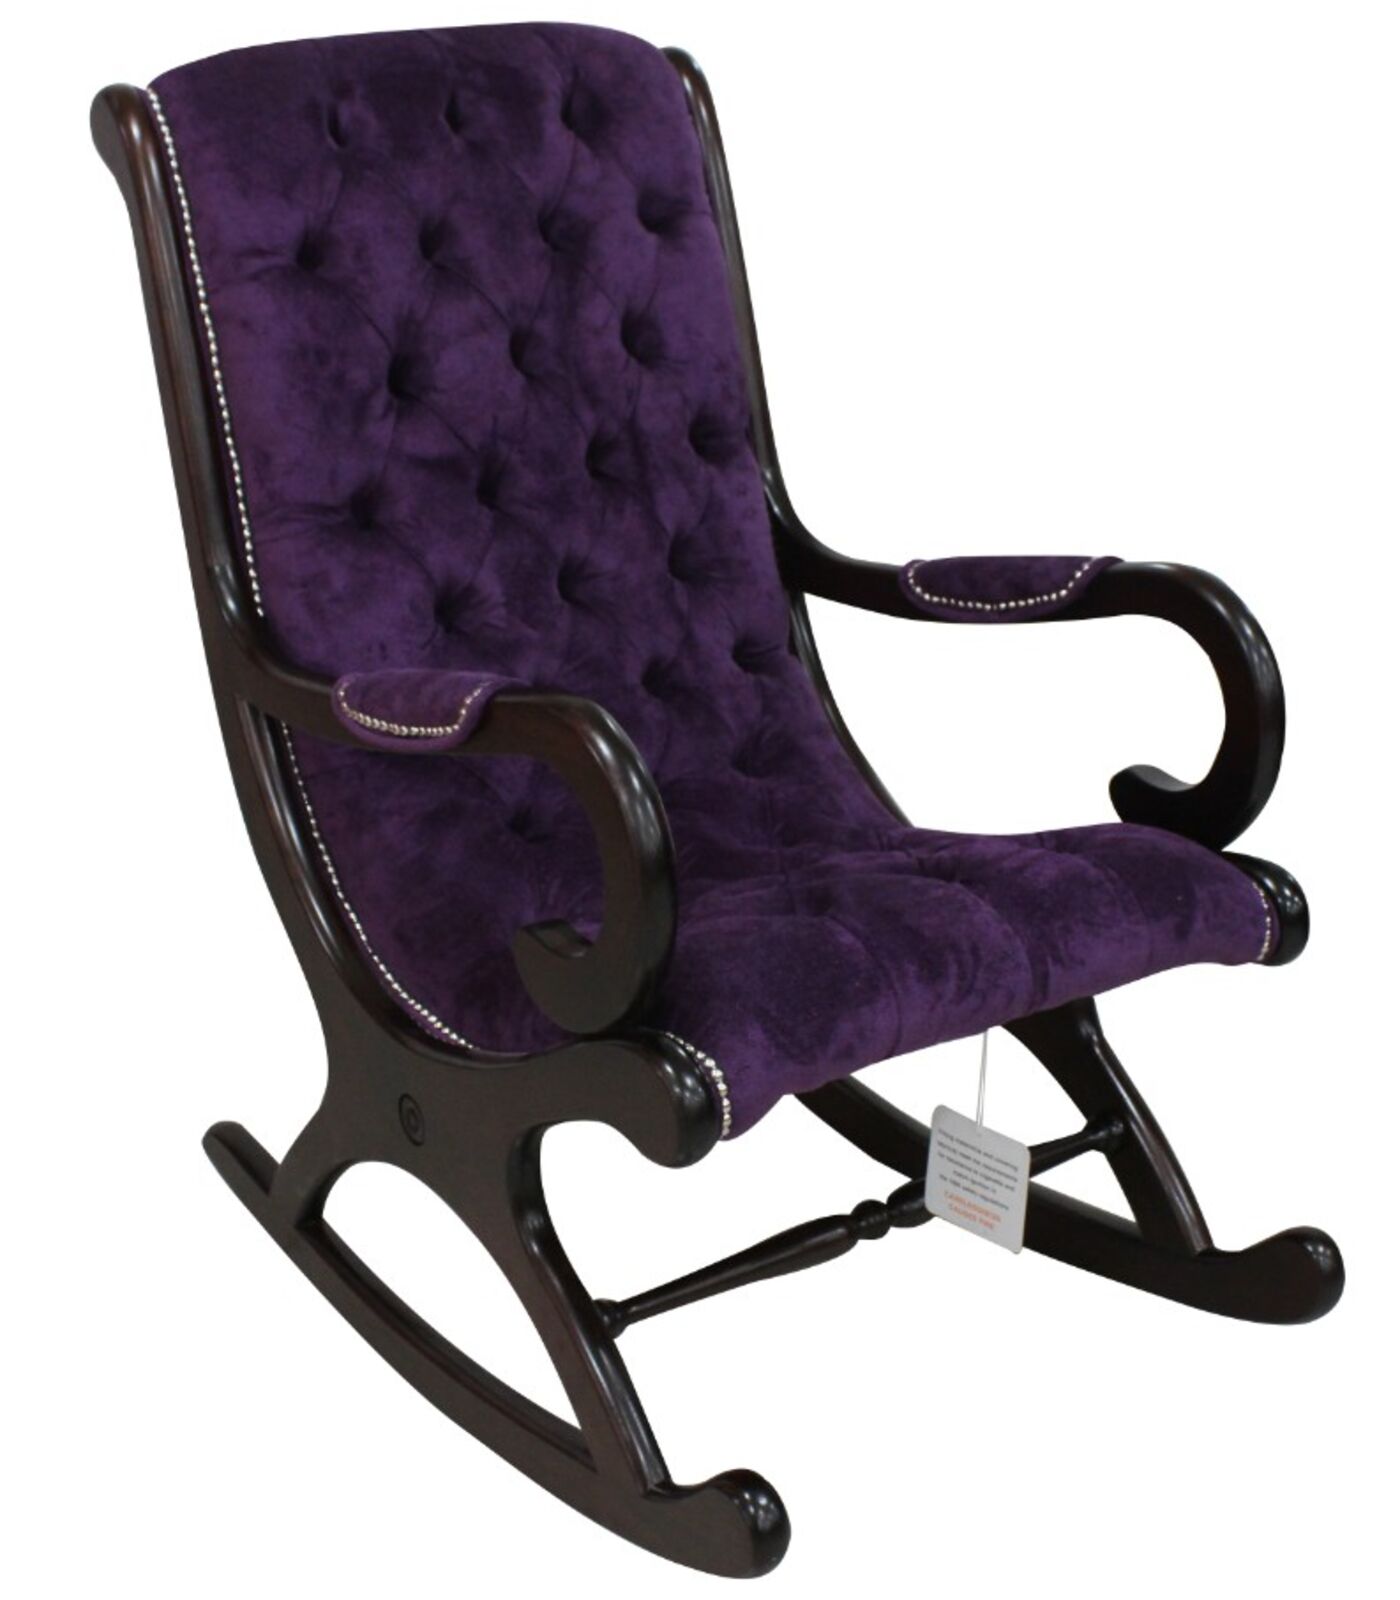 Product photograph of Chesterfield York Slipper Rocker Chair Dakota Violet Purple Velvet Fabric from Designer Sofas 4U